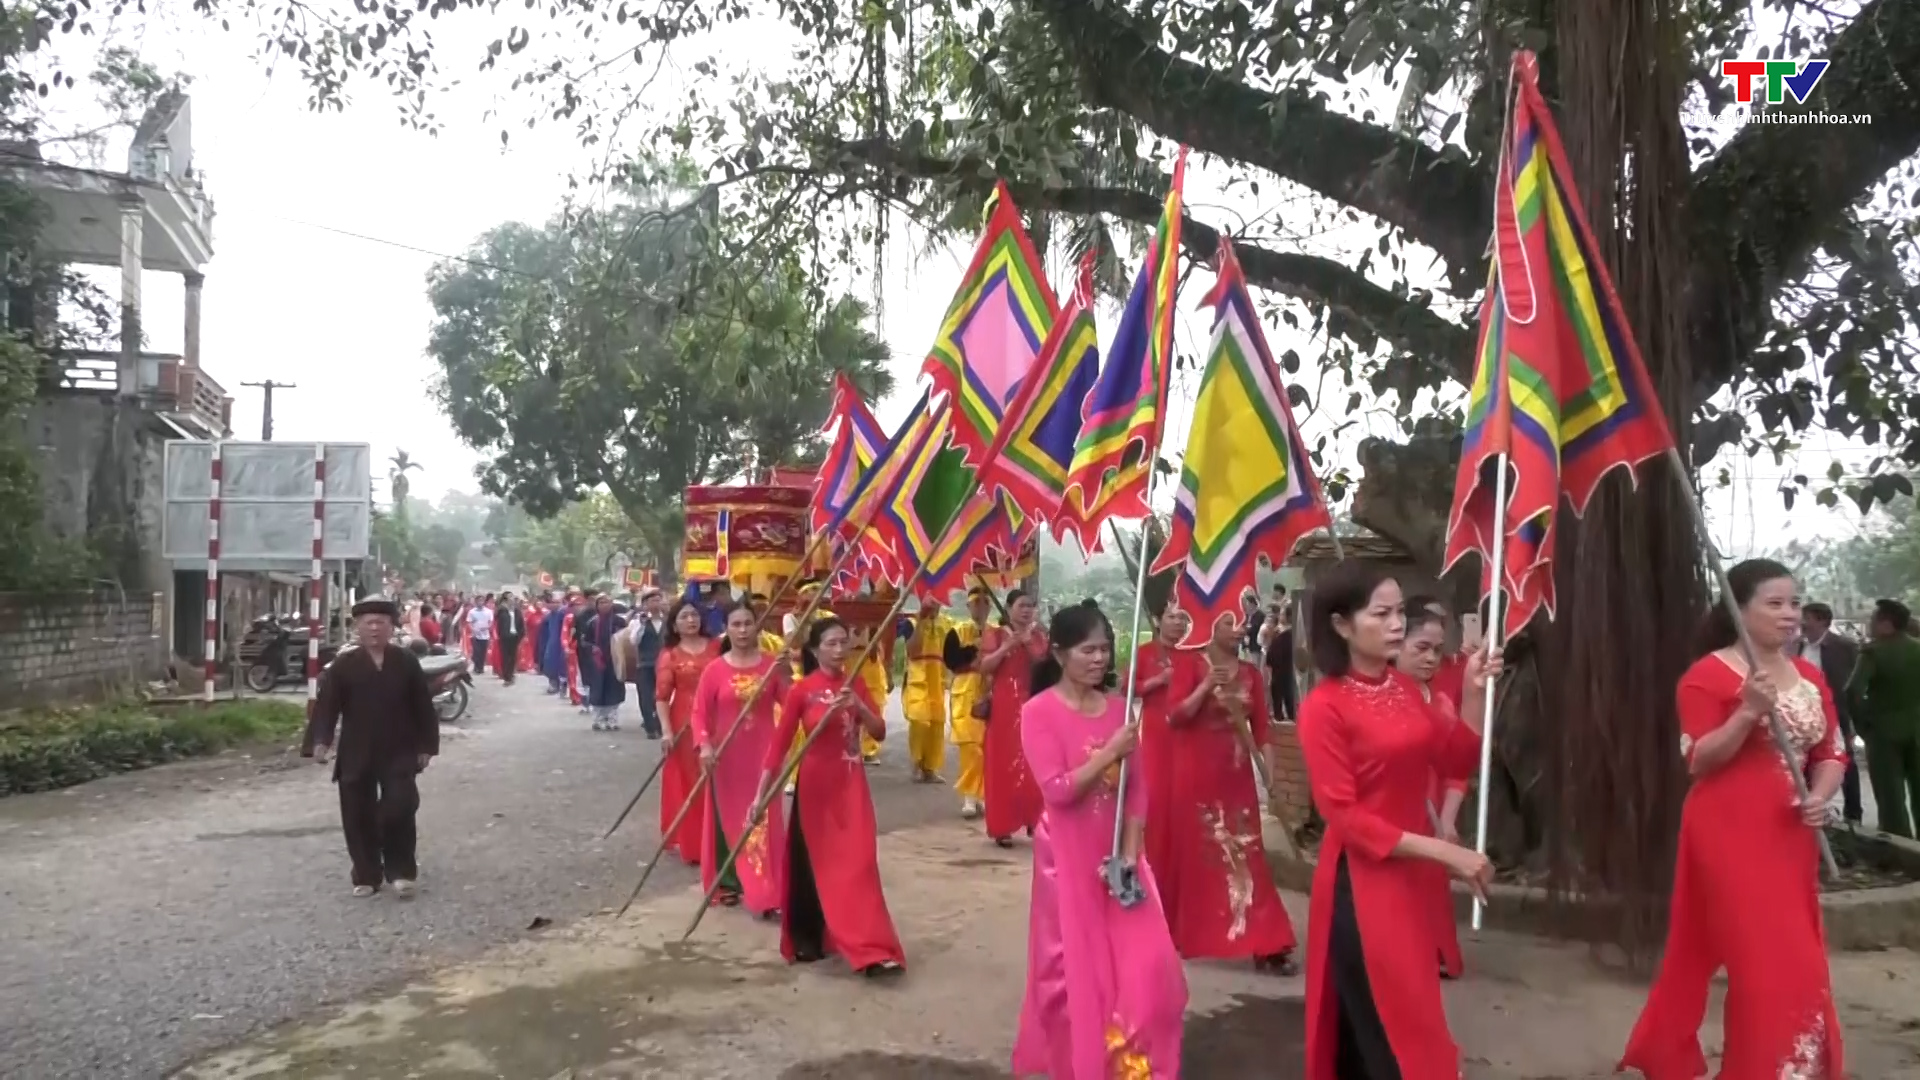  Xã Thọ Thanh, huyện Thường Xuân tổ chức lễ cầu phúc đình làng Hồ- Ảnh 1.